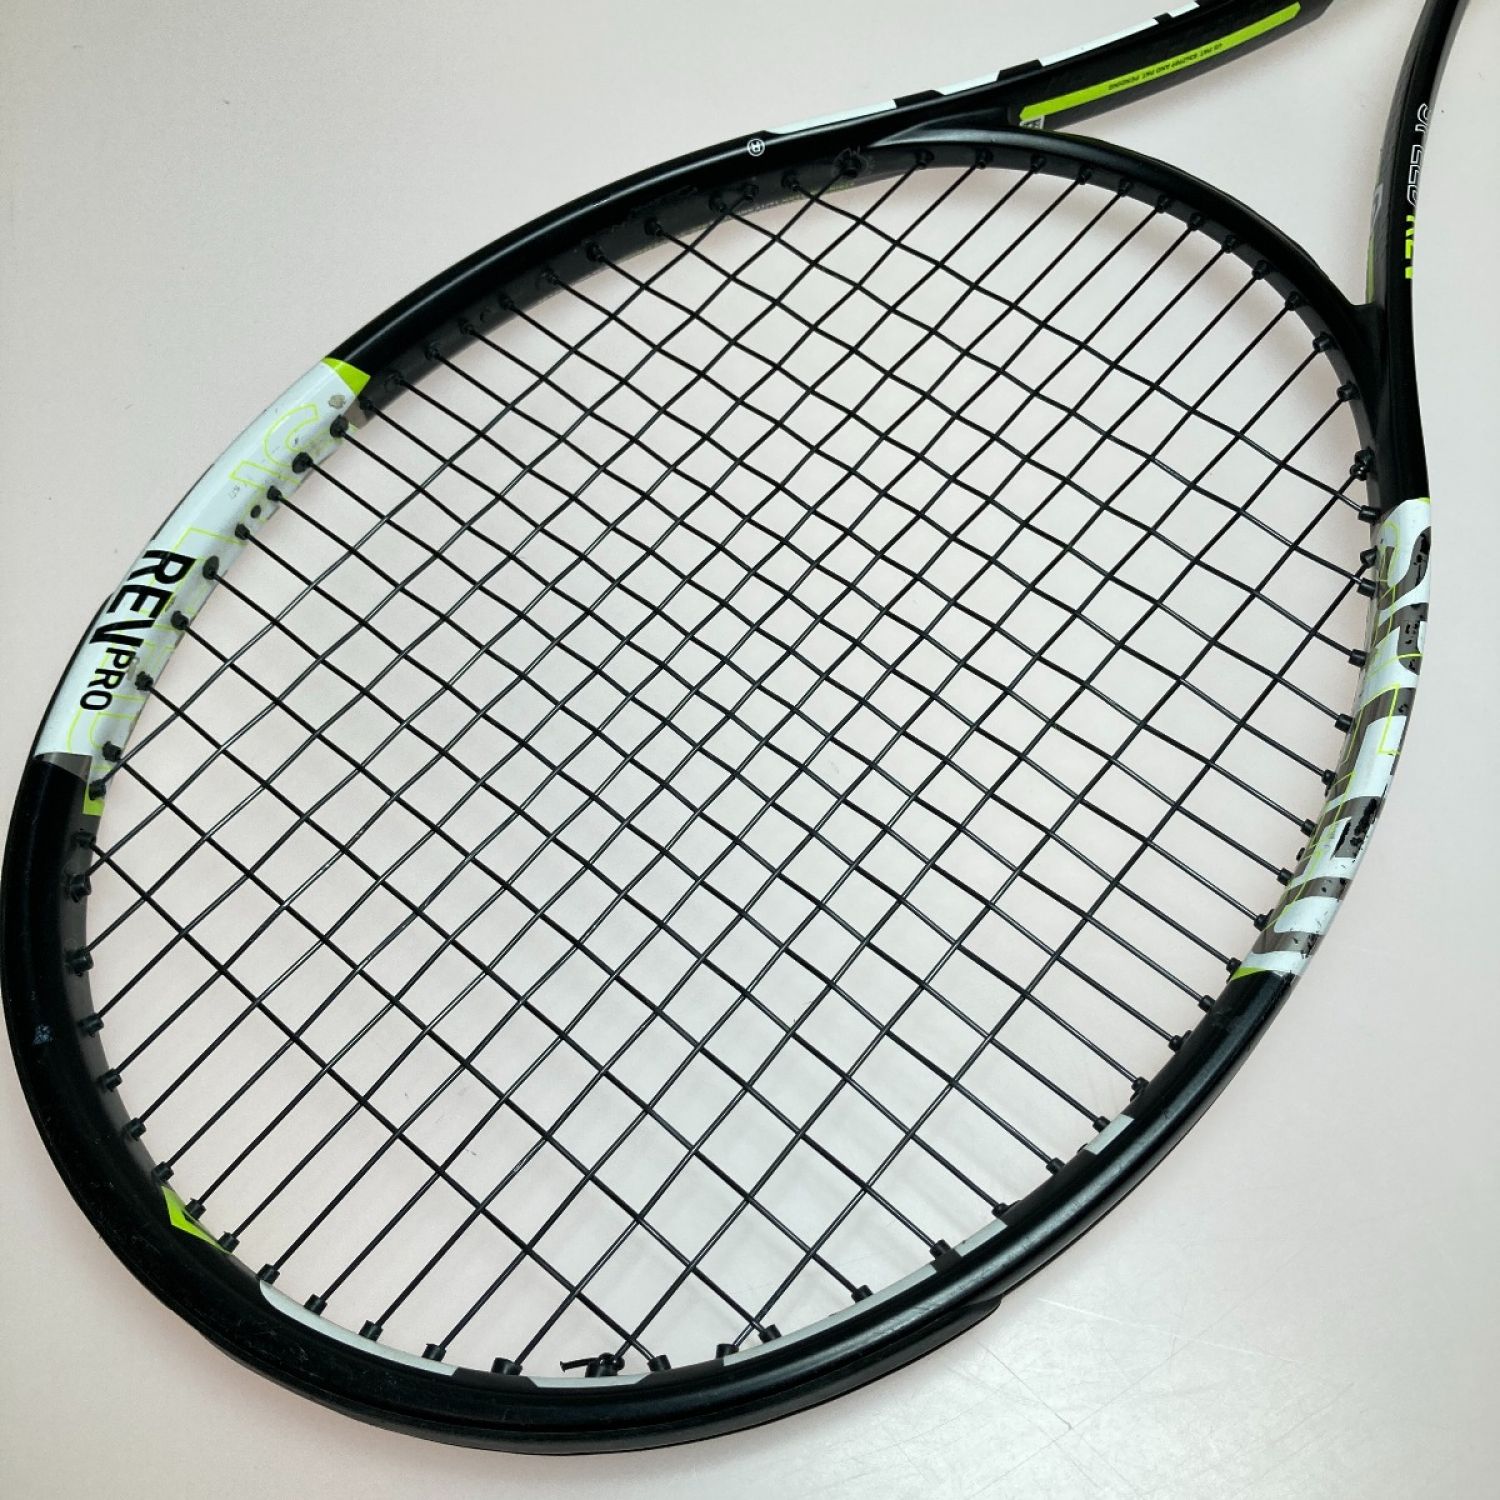 ラケットHEAD GRAPHENEXT SPEED REV PRO 硬式テニスラケット